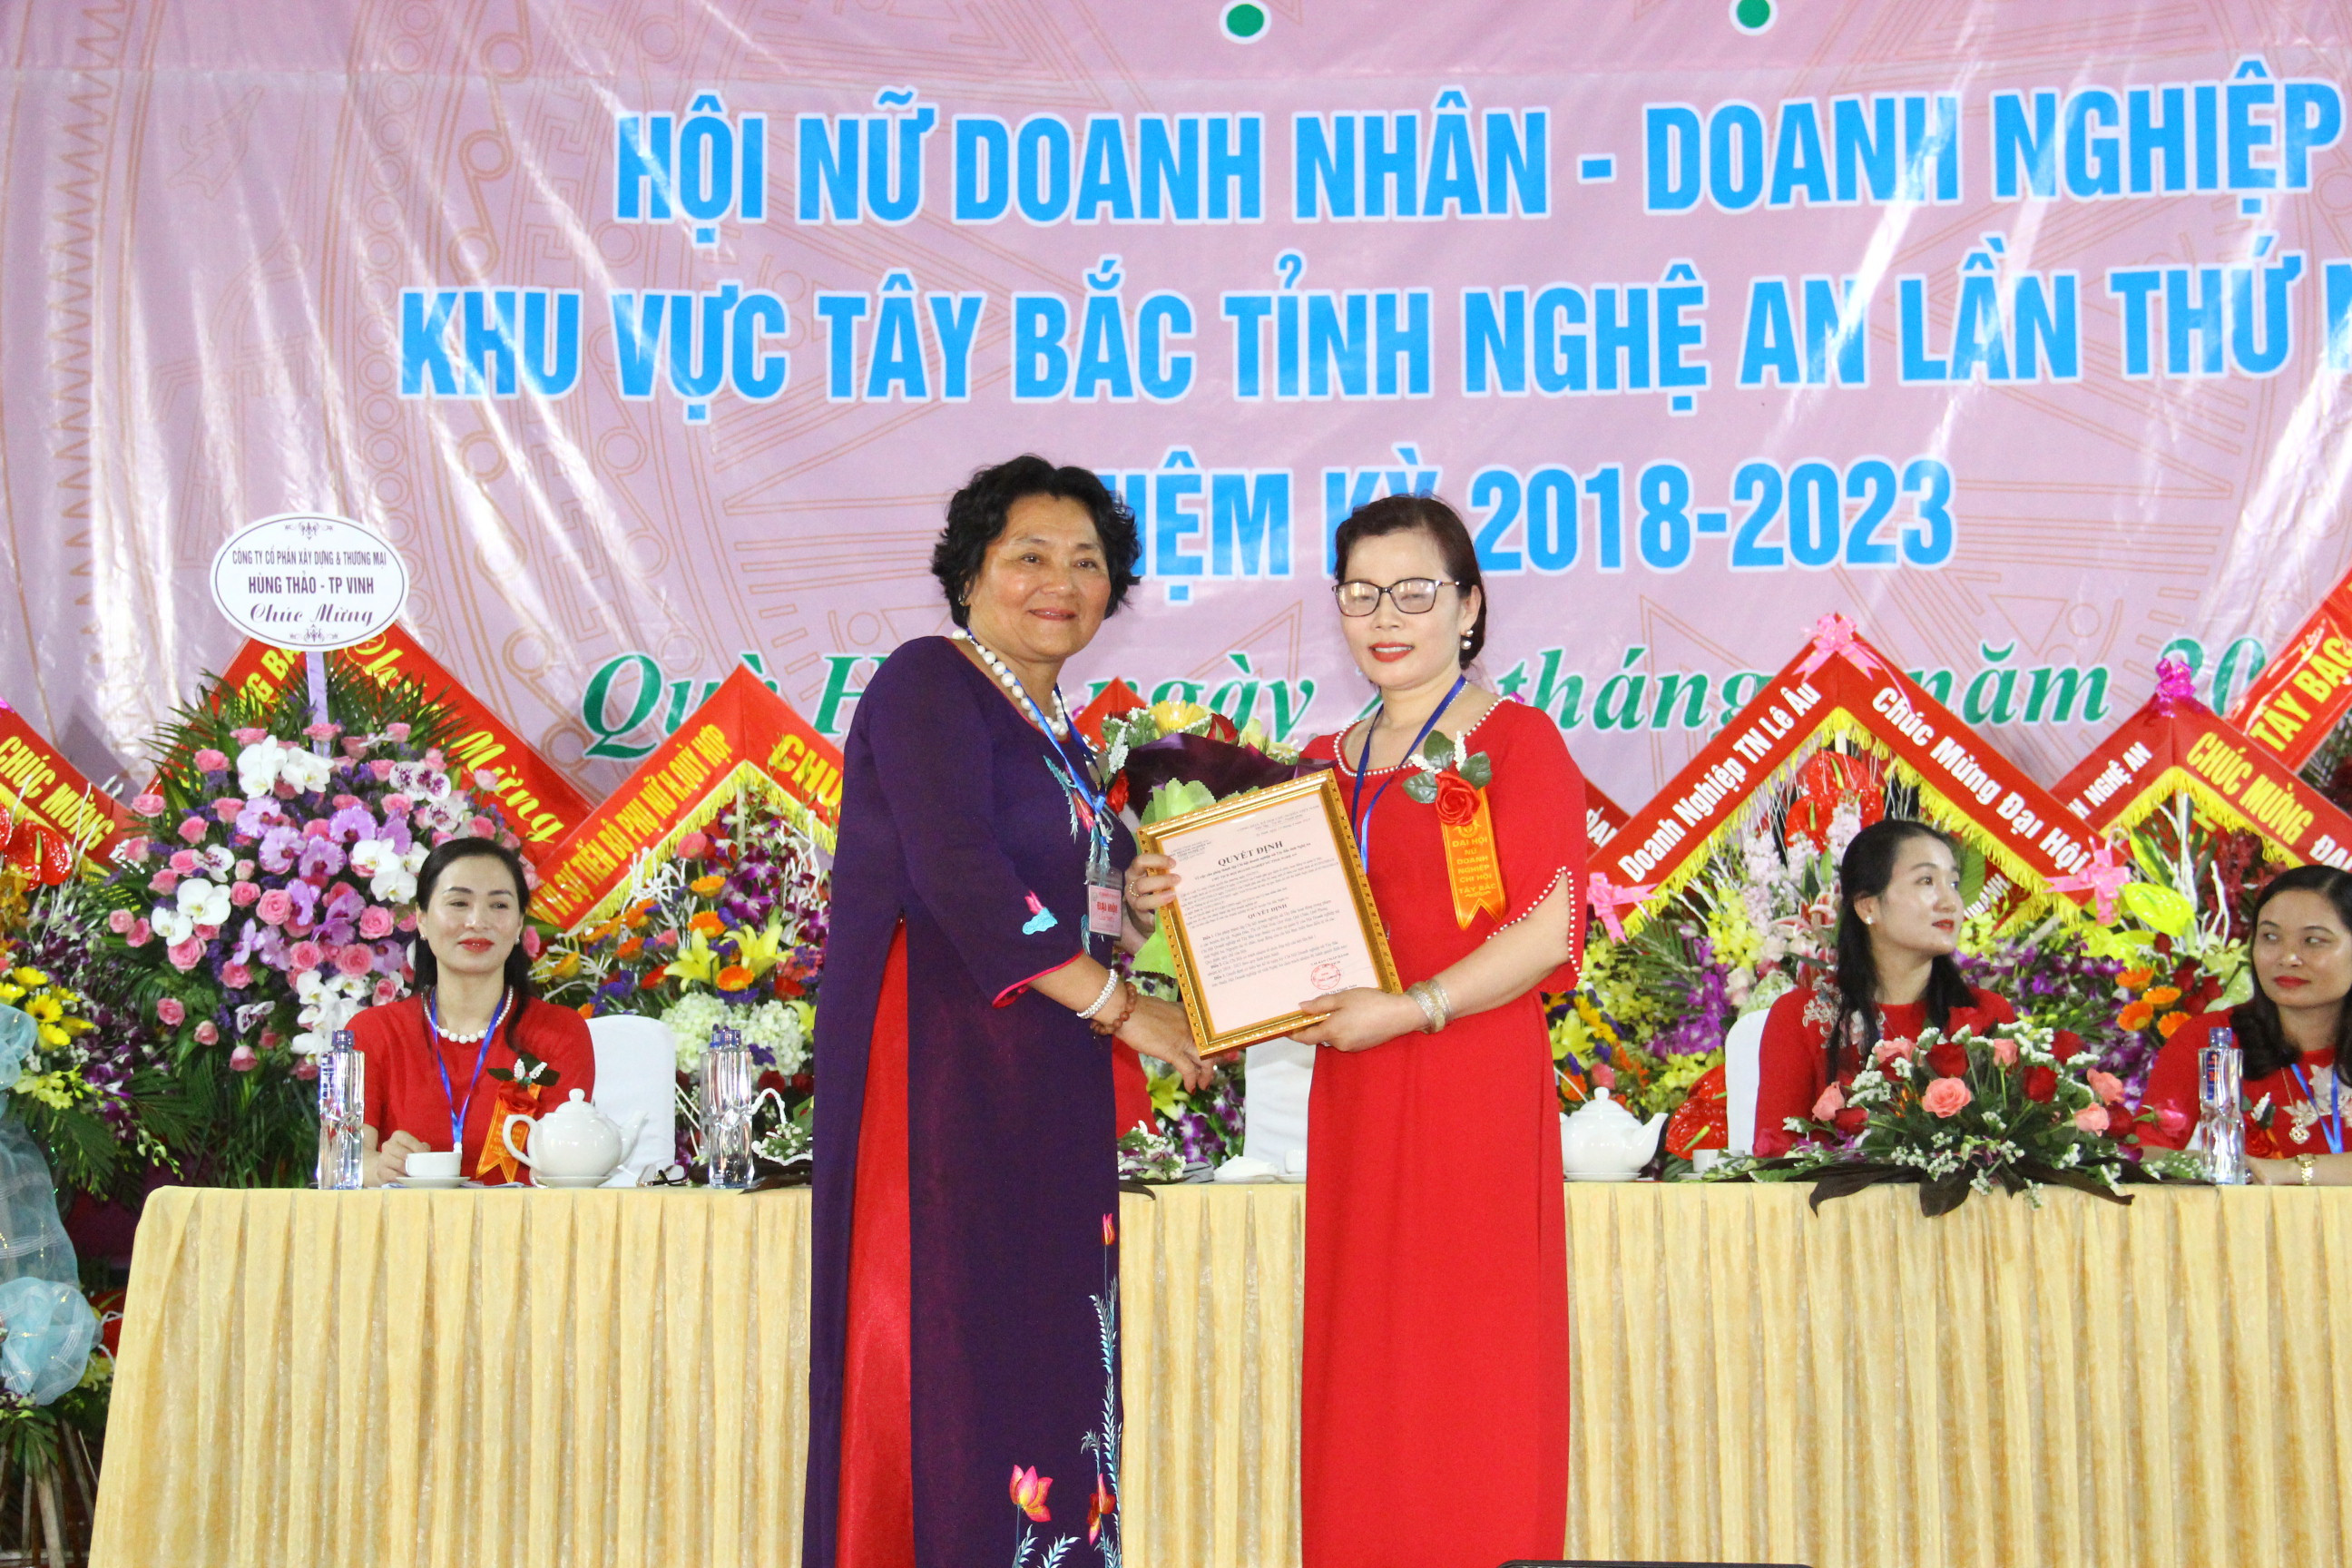  Bà Trần Thị Khãnh Toàn - Chủ tịch Hội nữ doanh nghiệp Nghệ An trao quyết định thành lập Chi hội nữ doanh nhân - doanhnghieepj khu vực Tây Bắc. Ảnh Hoàng Vĩnh.